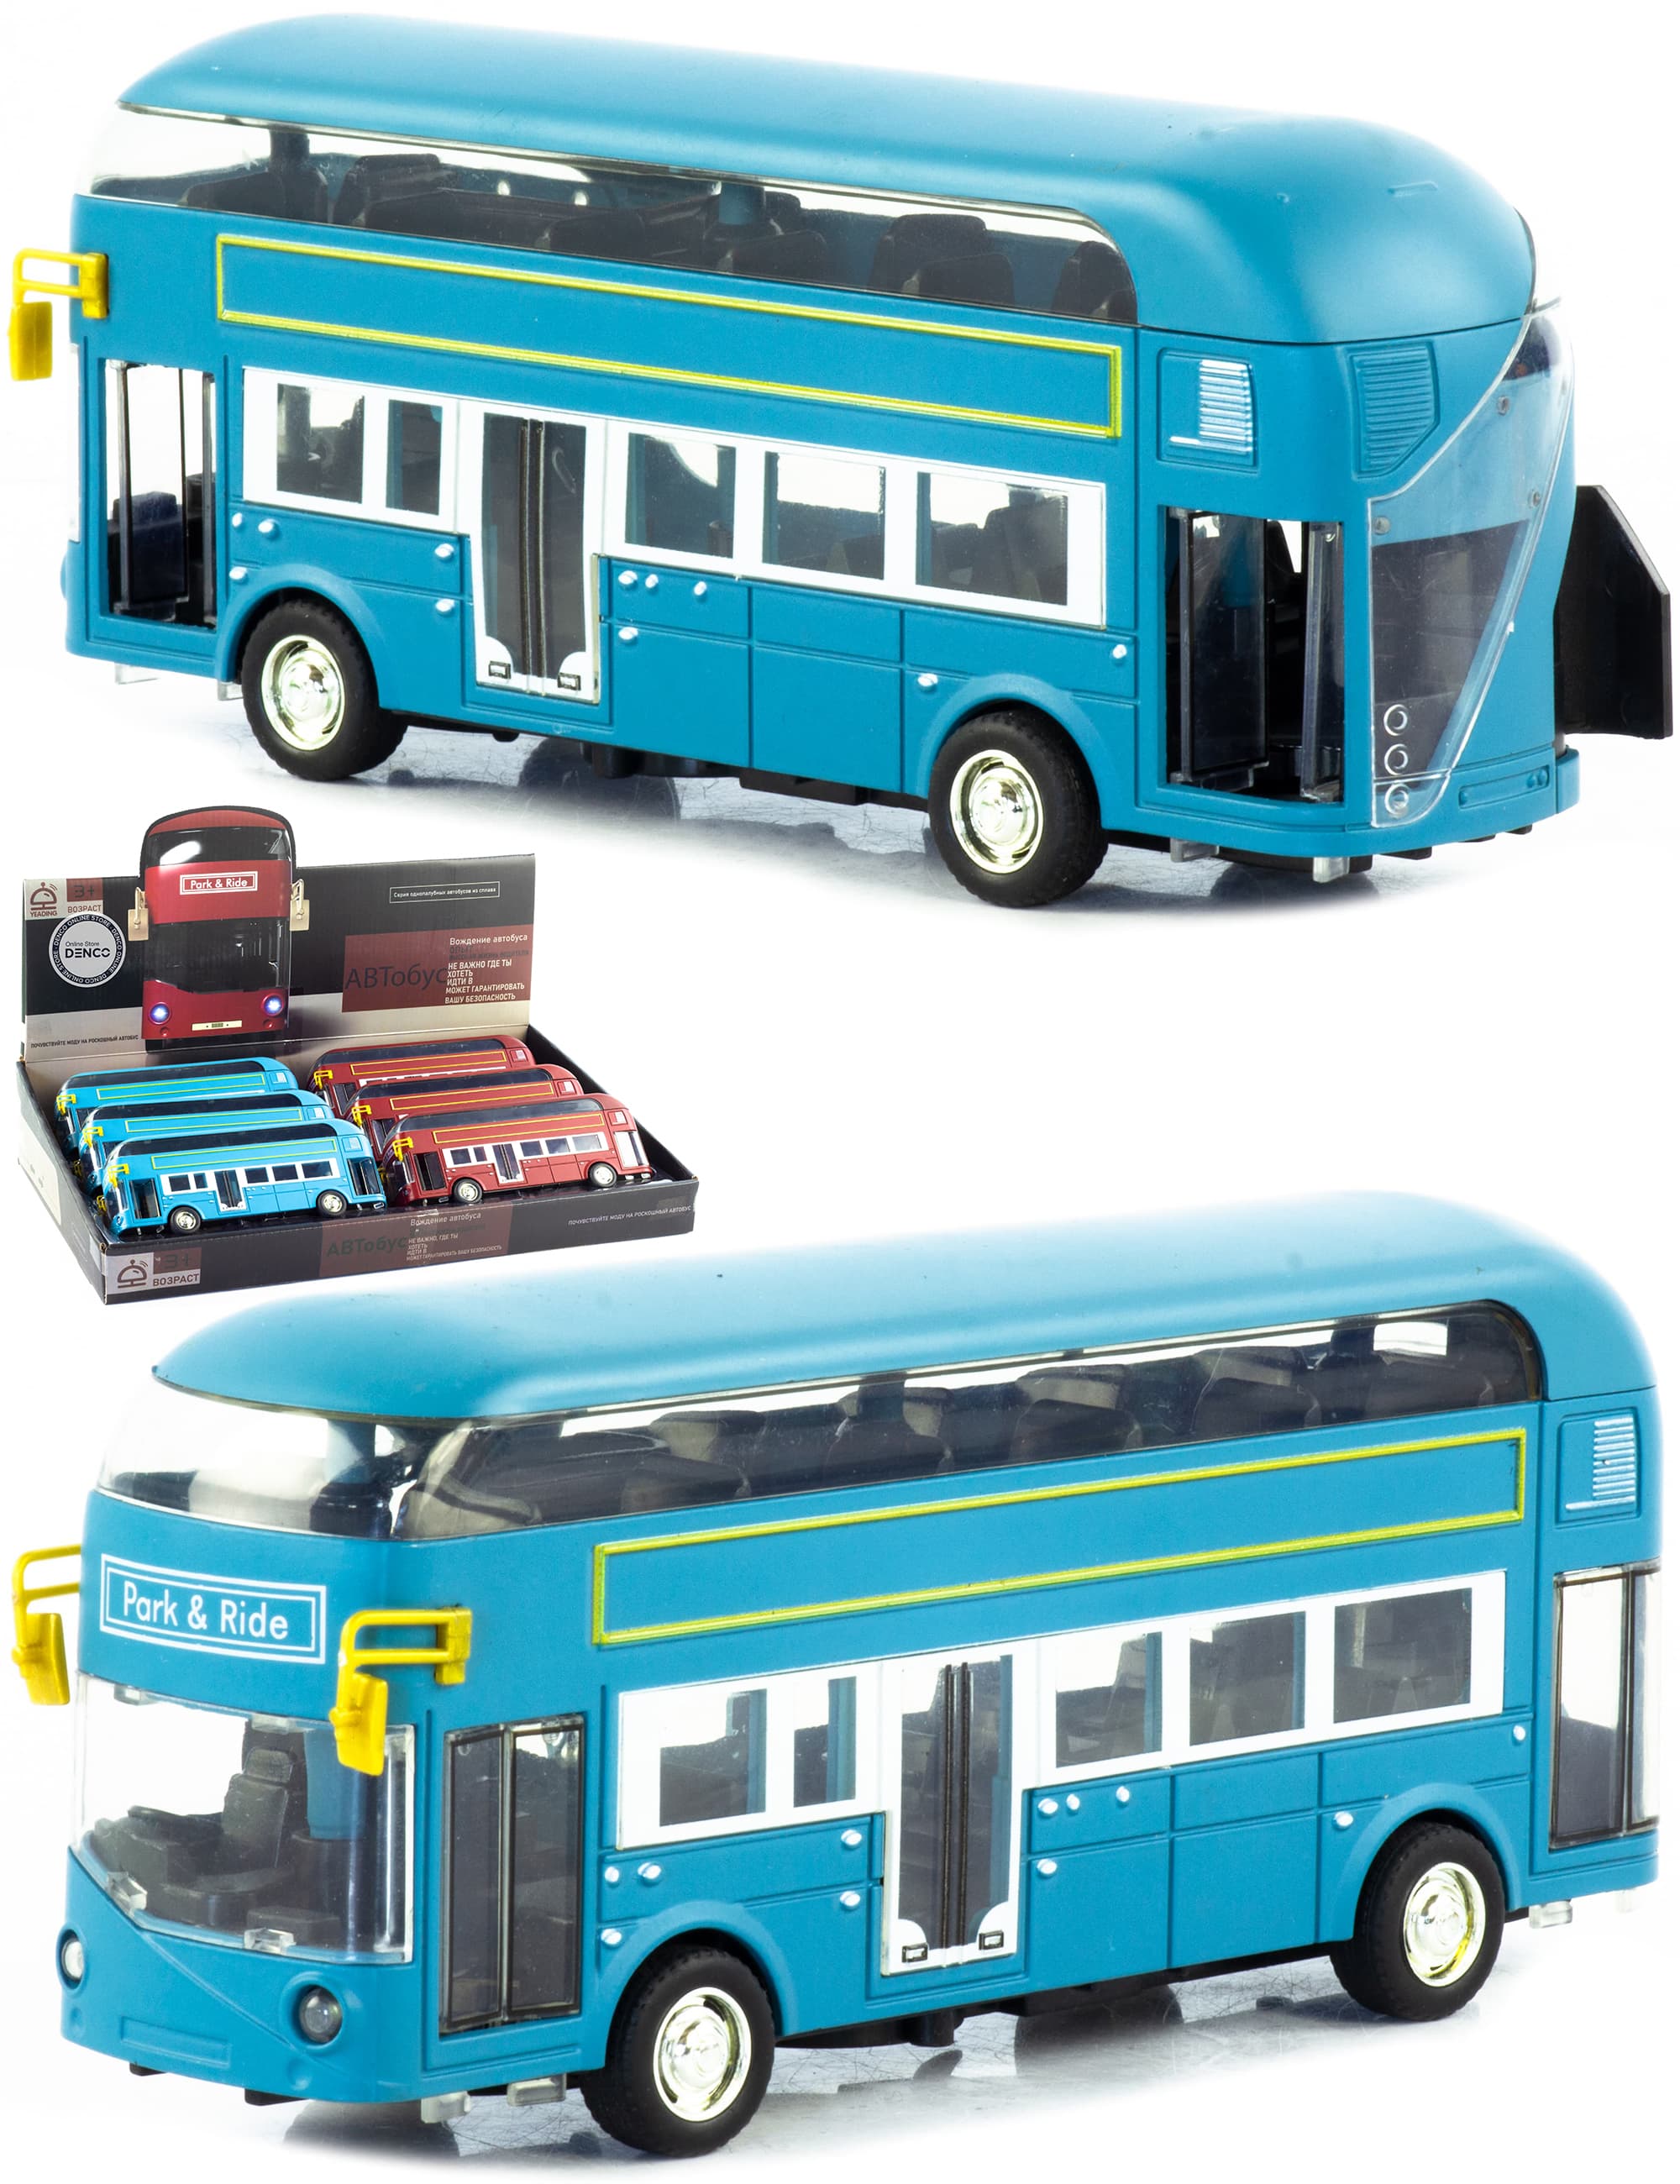 Металлический двухэтажный автобус Yeading 1:48 «Лондонский Винтаж» 18 см. 6629А инерционный, свет, звук / Голубой